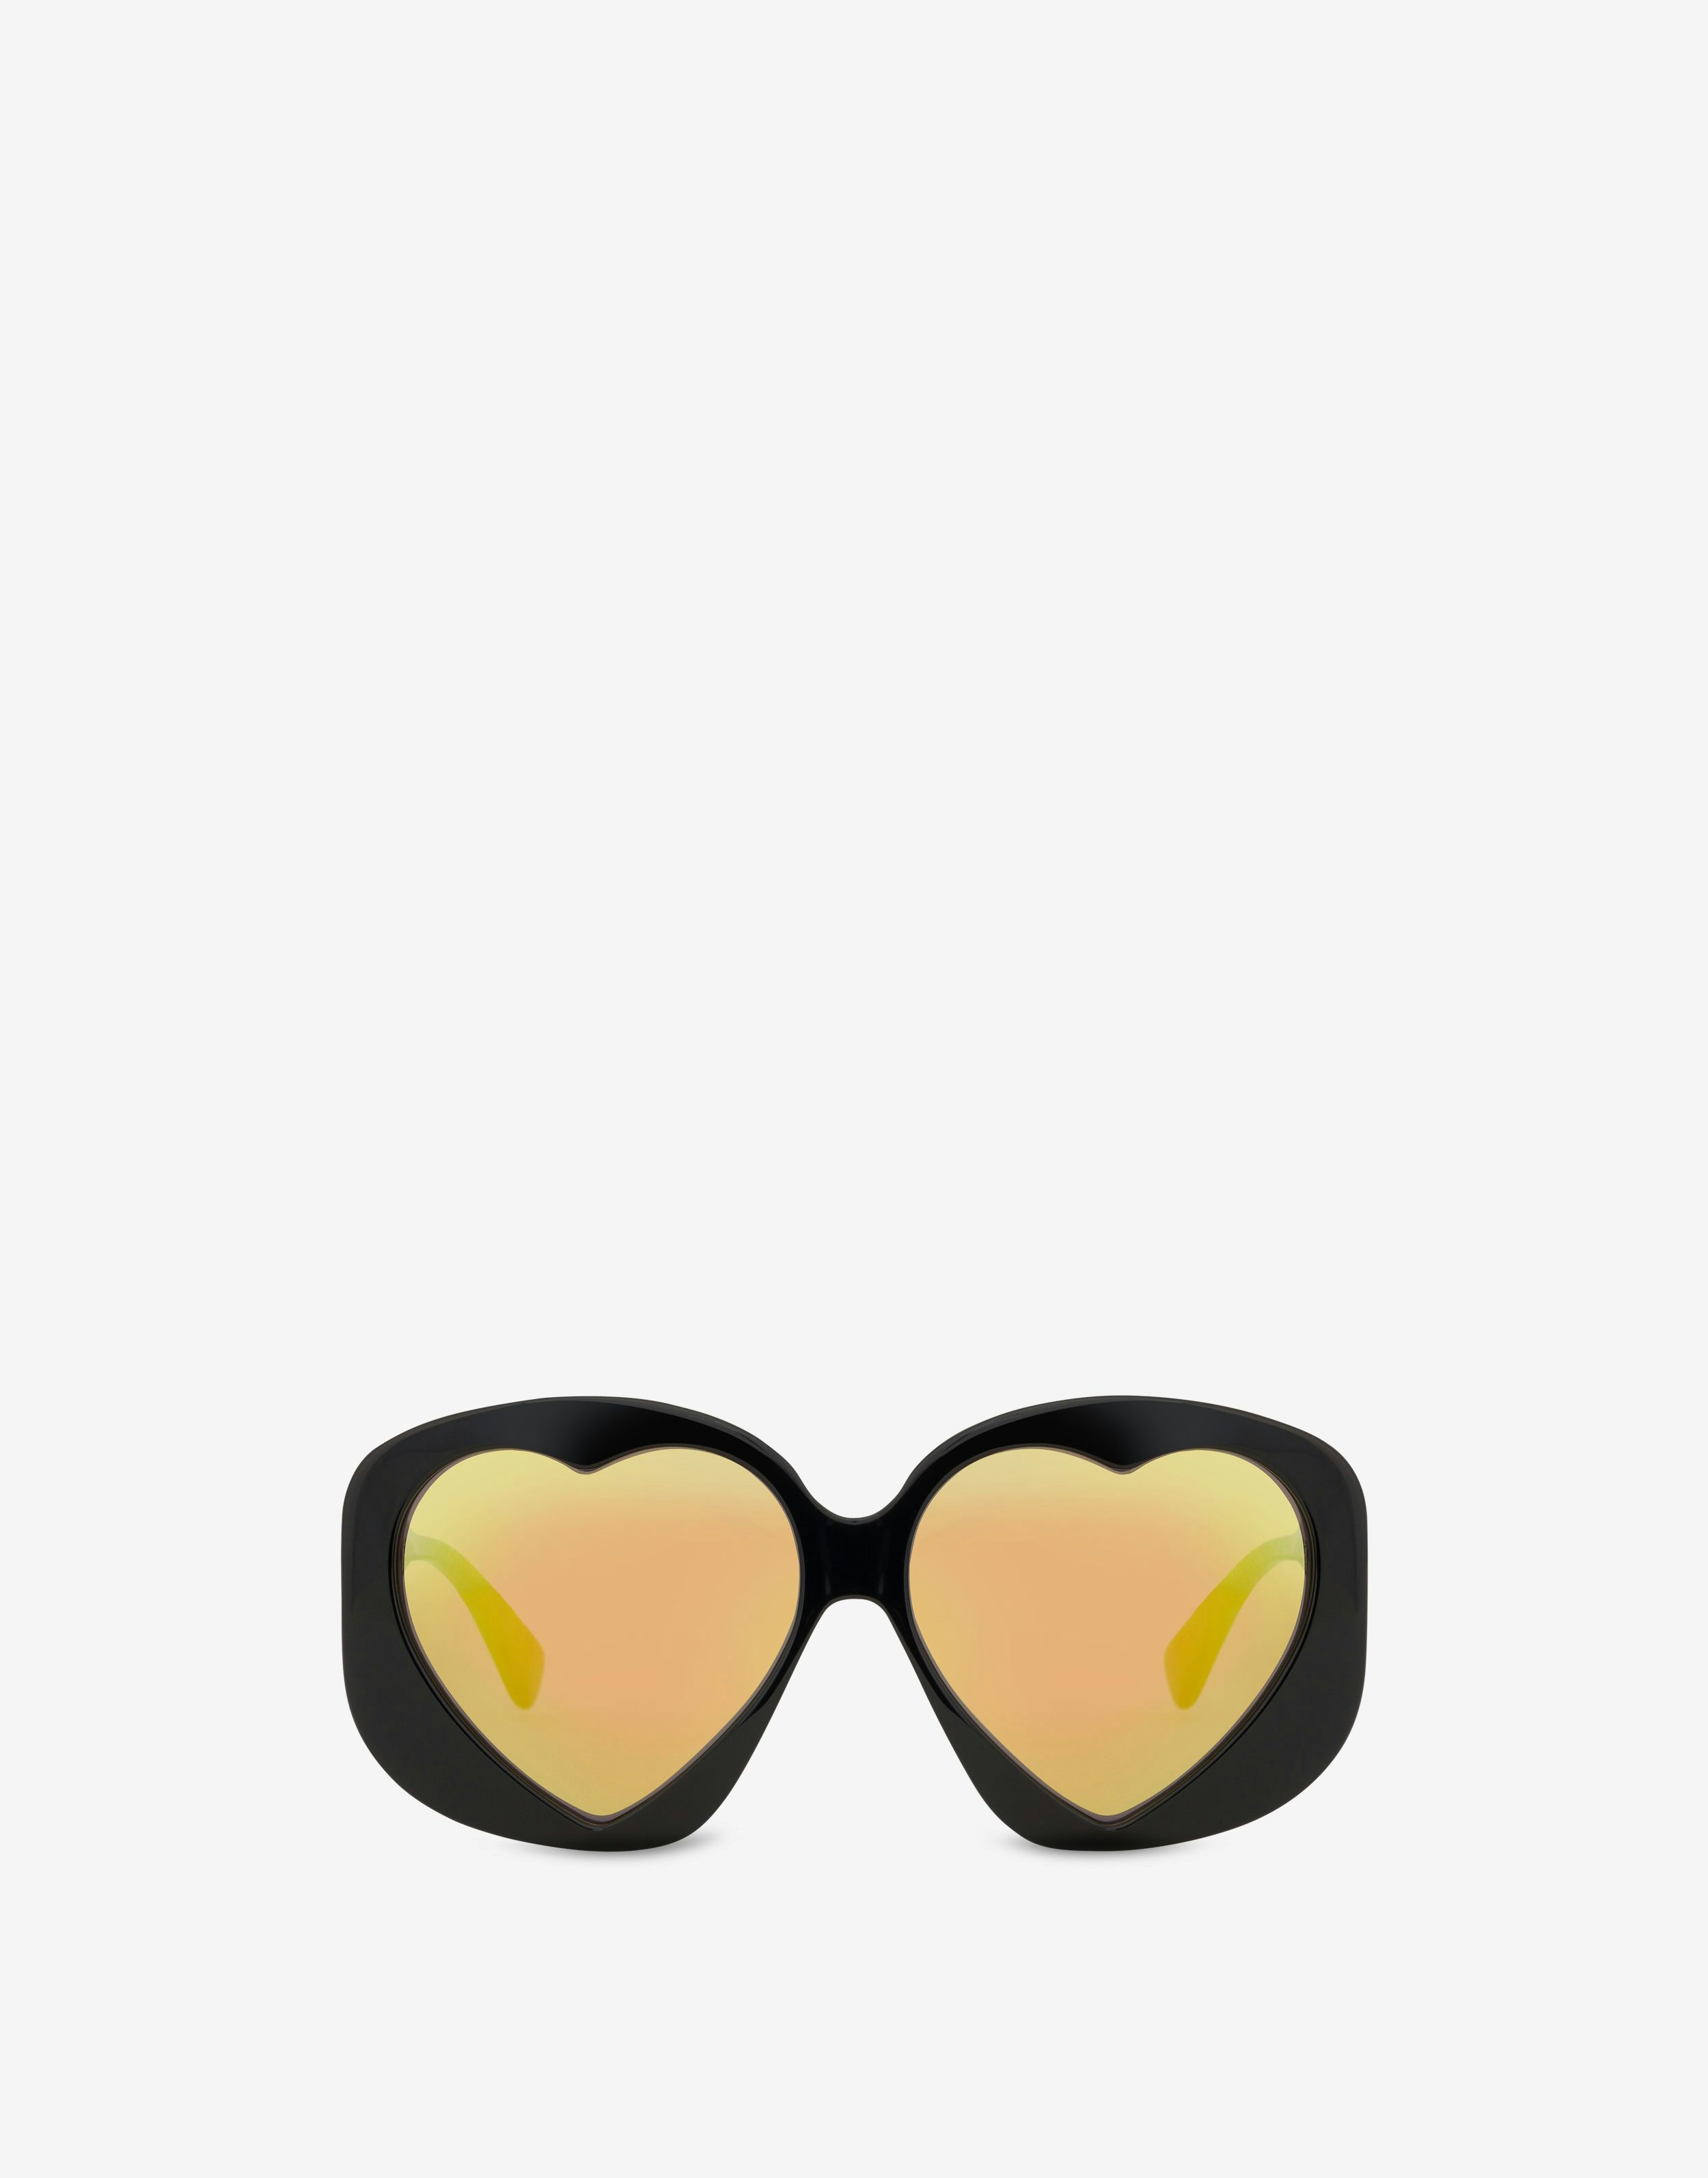 Heart Lenses black sunglasses